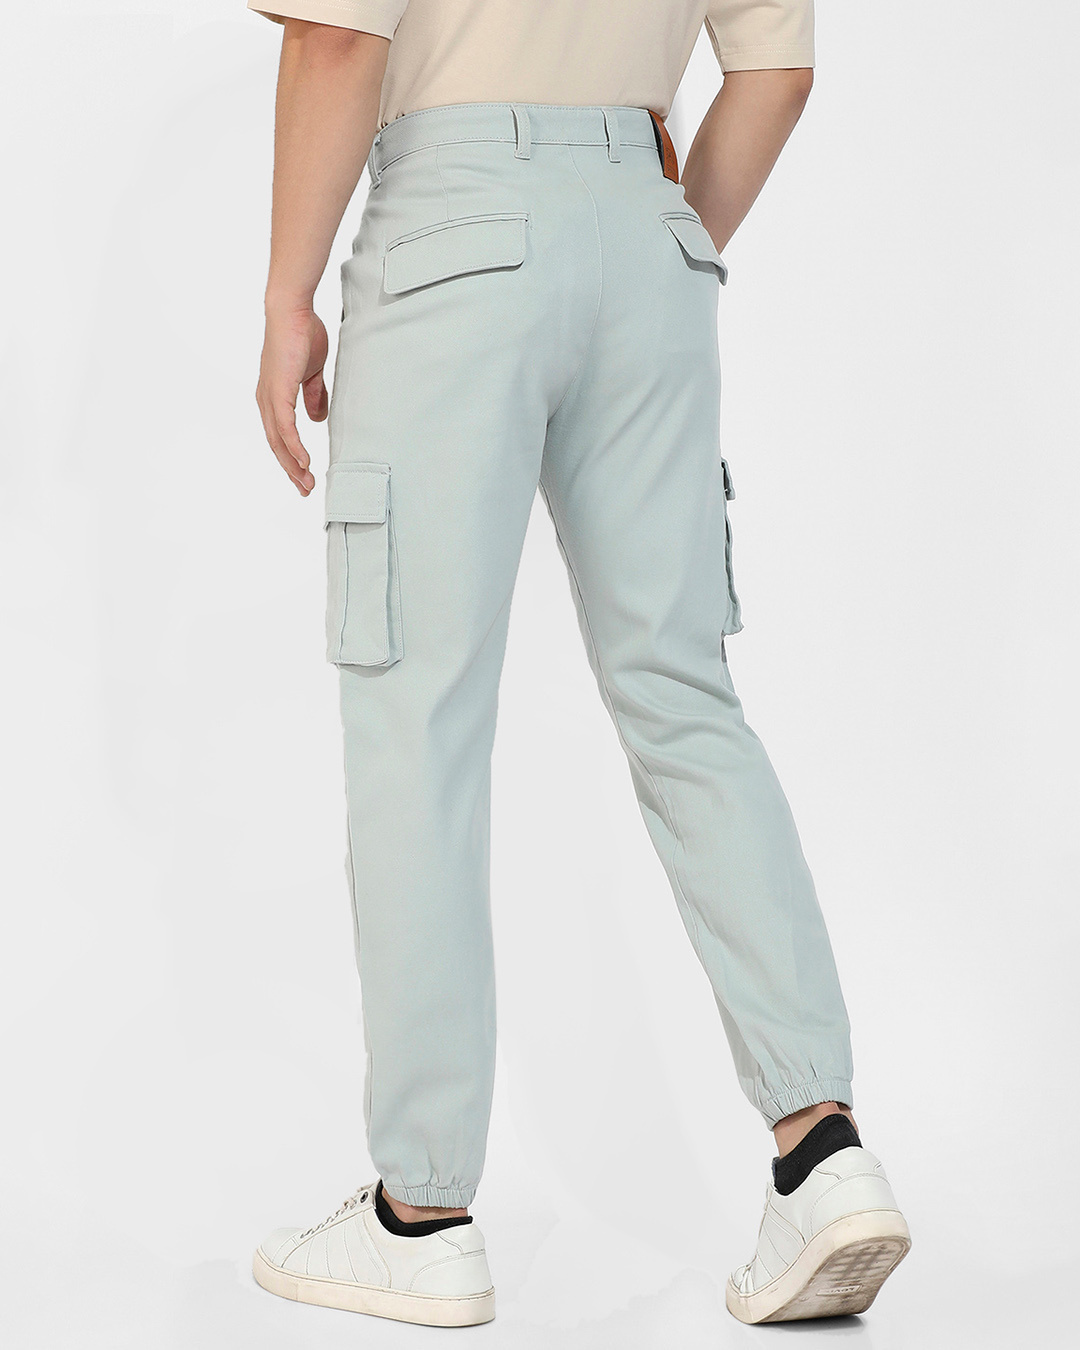 Buy Men's Sage Green Cargo Trousers Online at Bewakoof